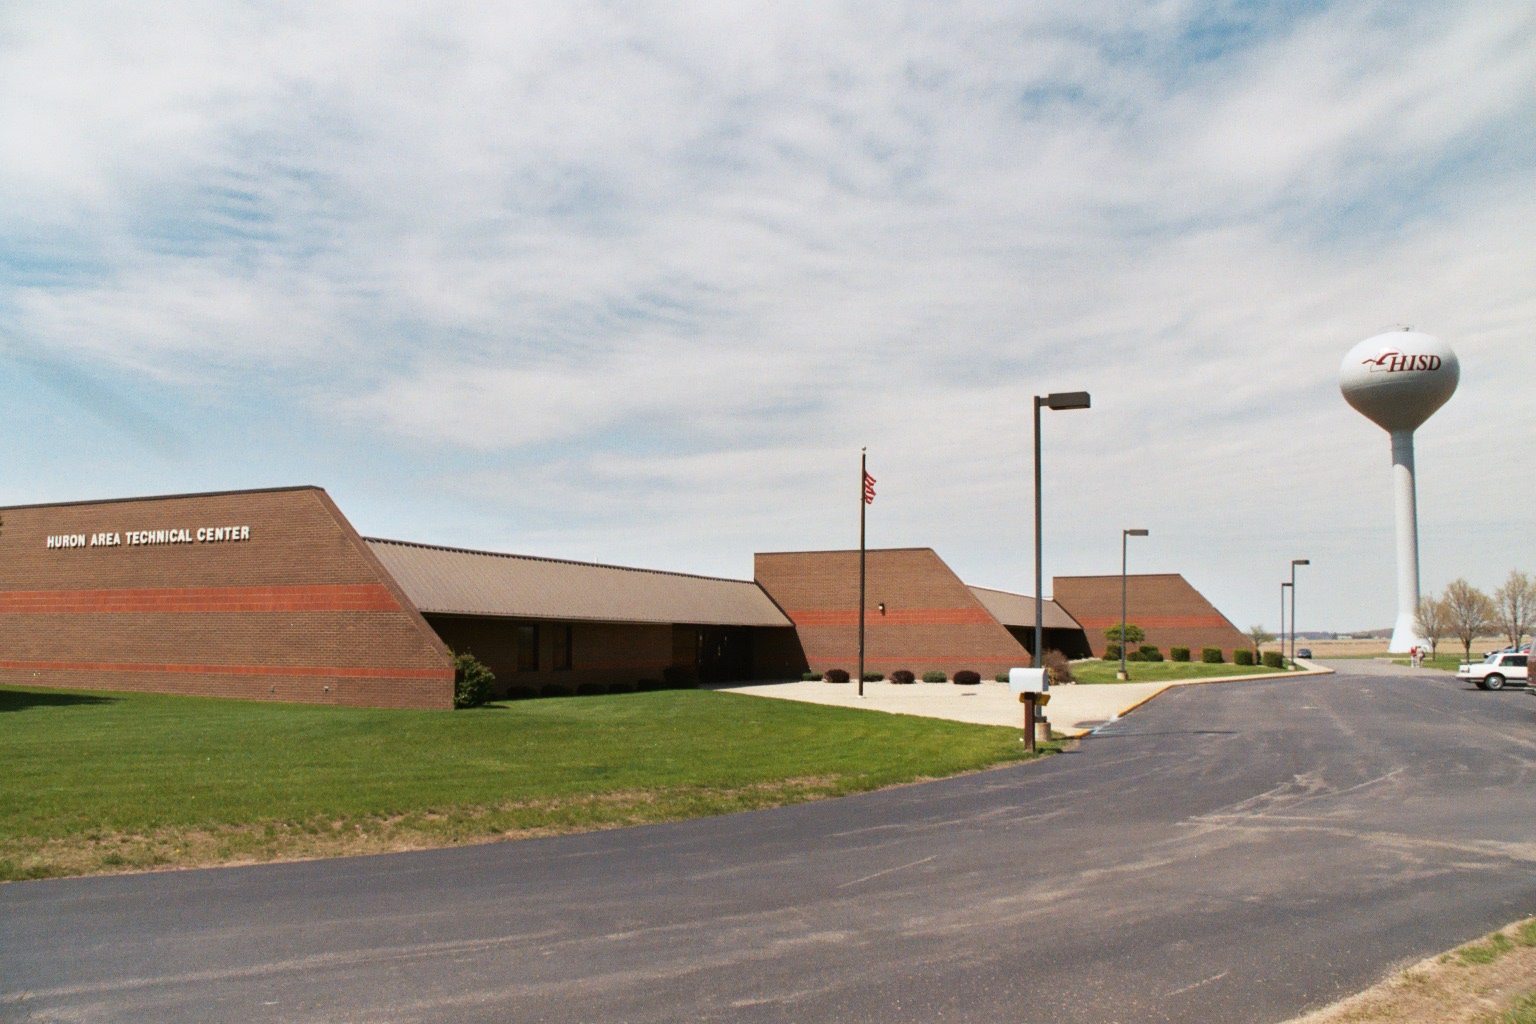 Huron Area Technical Center